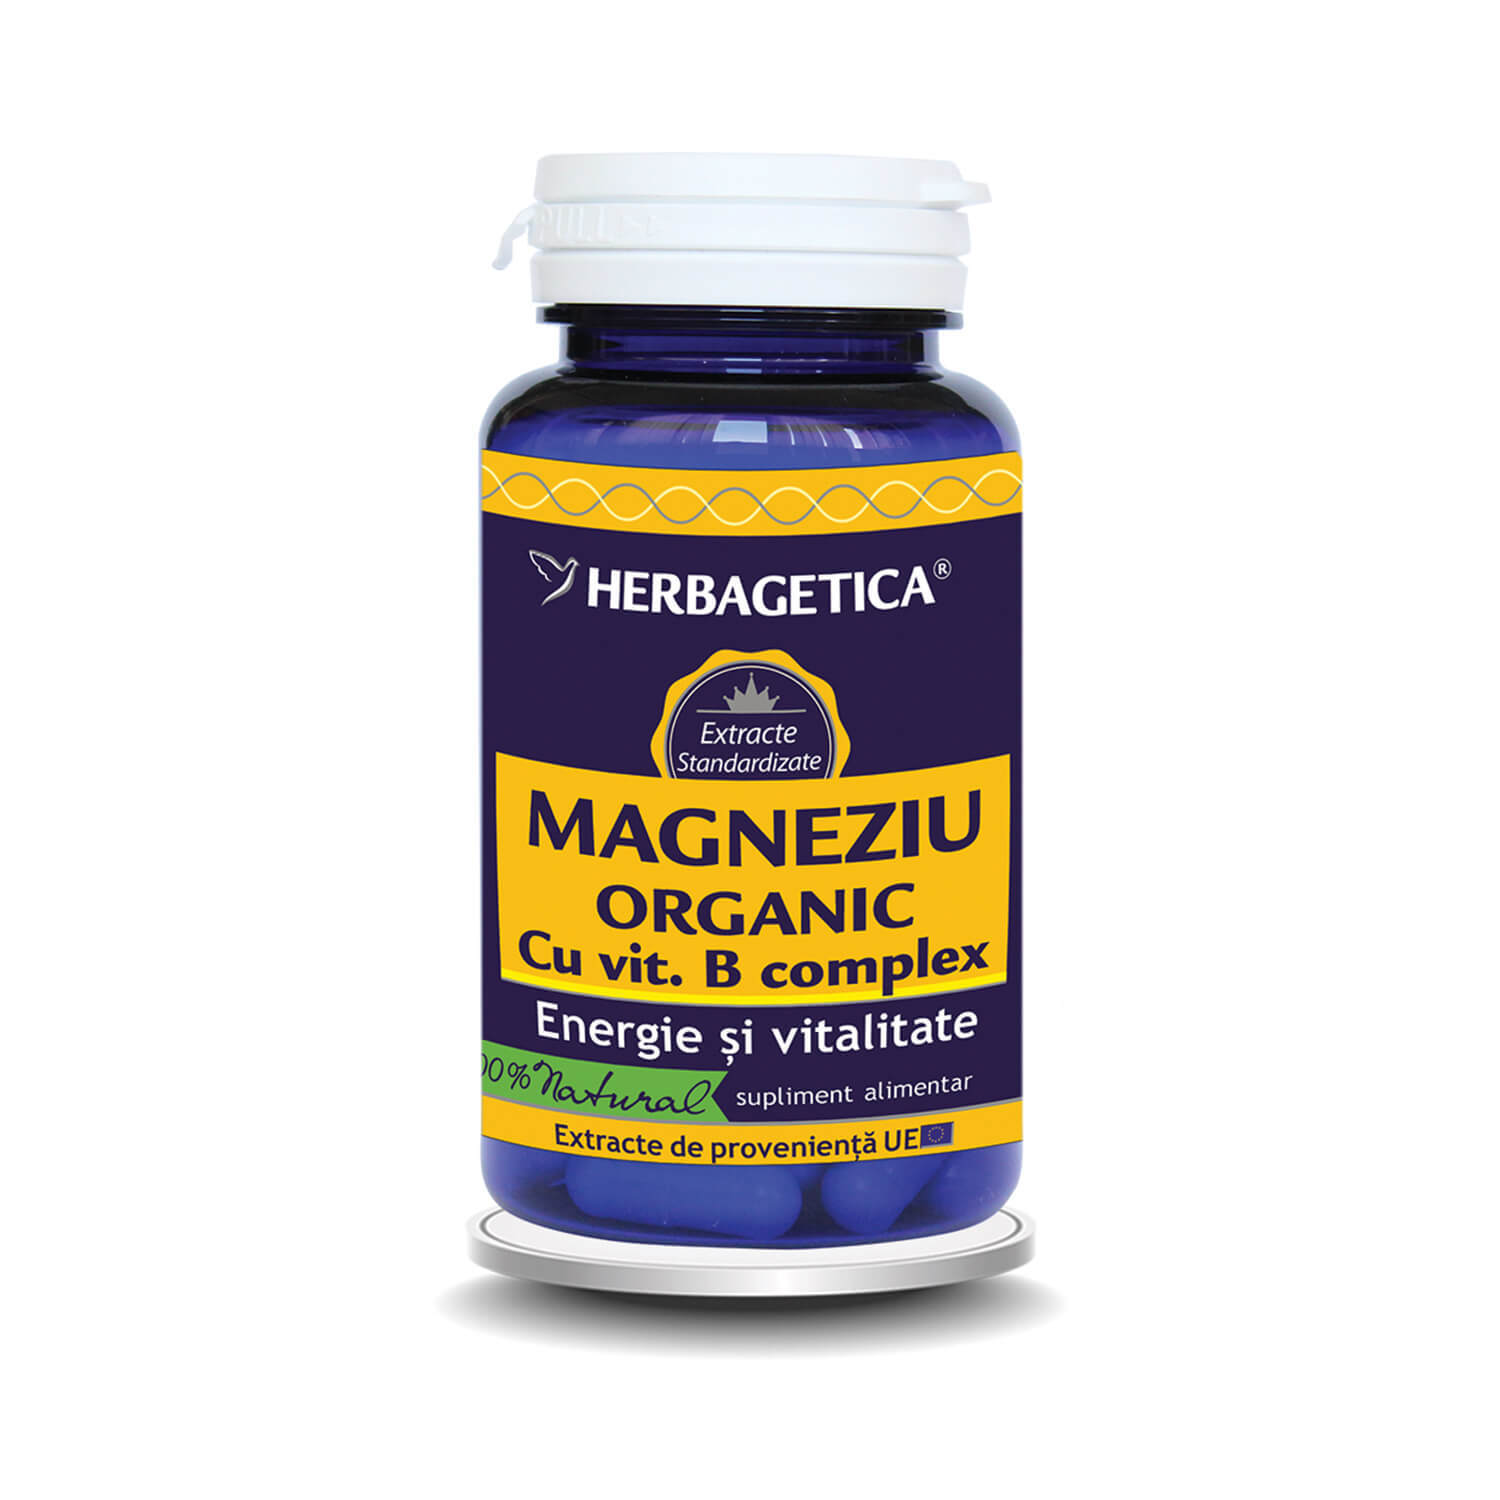 magneziu organic cu vitamina b complex 120 capsule herbagetica Magneziu Organic cu Vitamina B complex, 30 capsule, Herbagetica